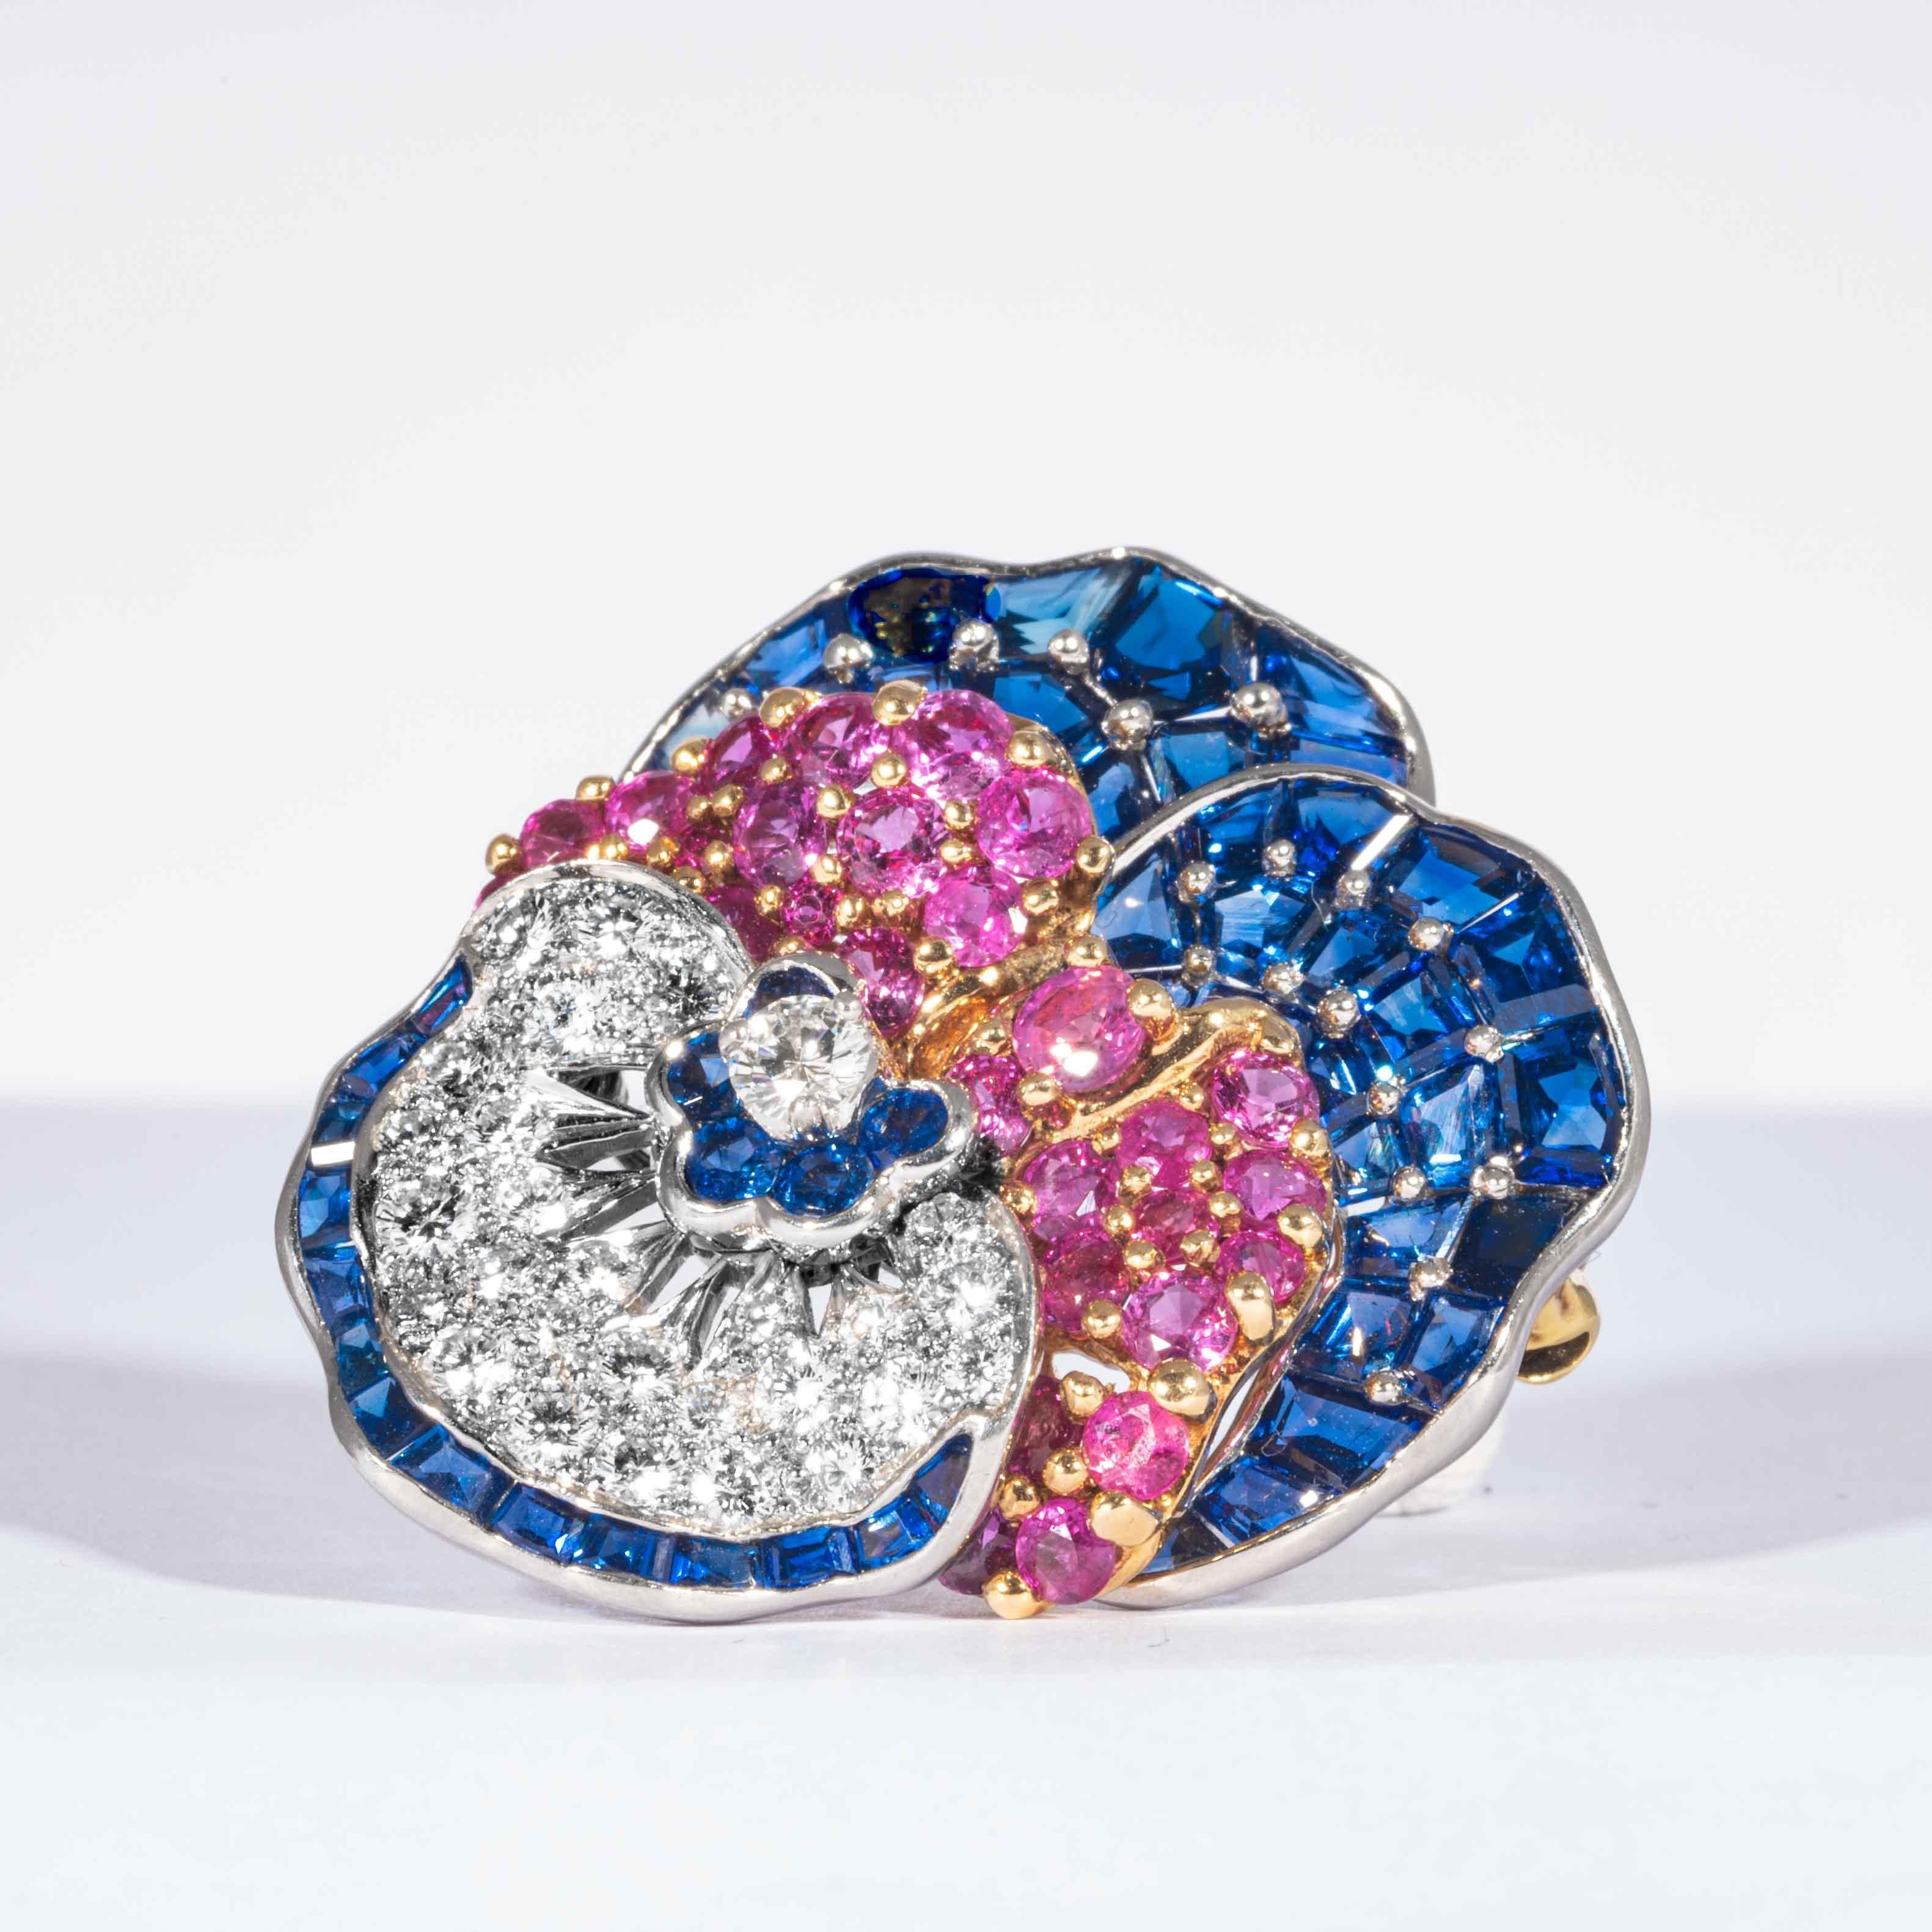 Blaue und rosafarbene Saphire und Diamanten sind in dieser klassischen Stiefmütterchen-Anstecknadel in 18 Karat Gelbgold und Platin gefasst.  Bestehend aus 48 blauen Saphiren im Mischschliff, 5 blauen Saphiren im Rundschliff, 30 rosafarbenen